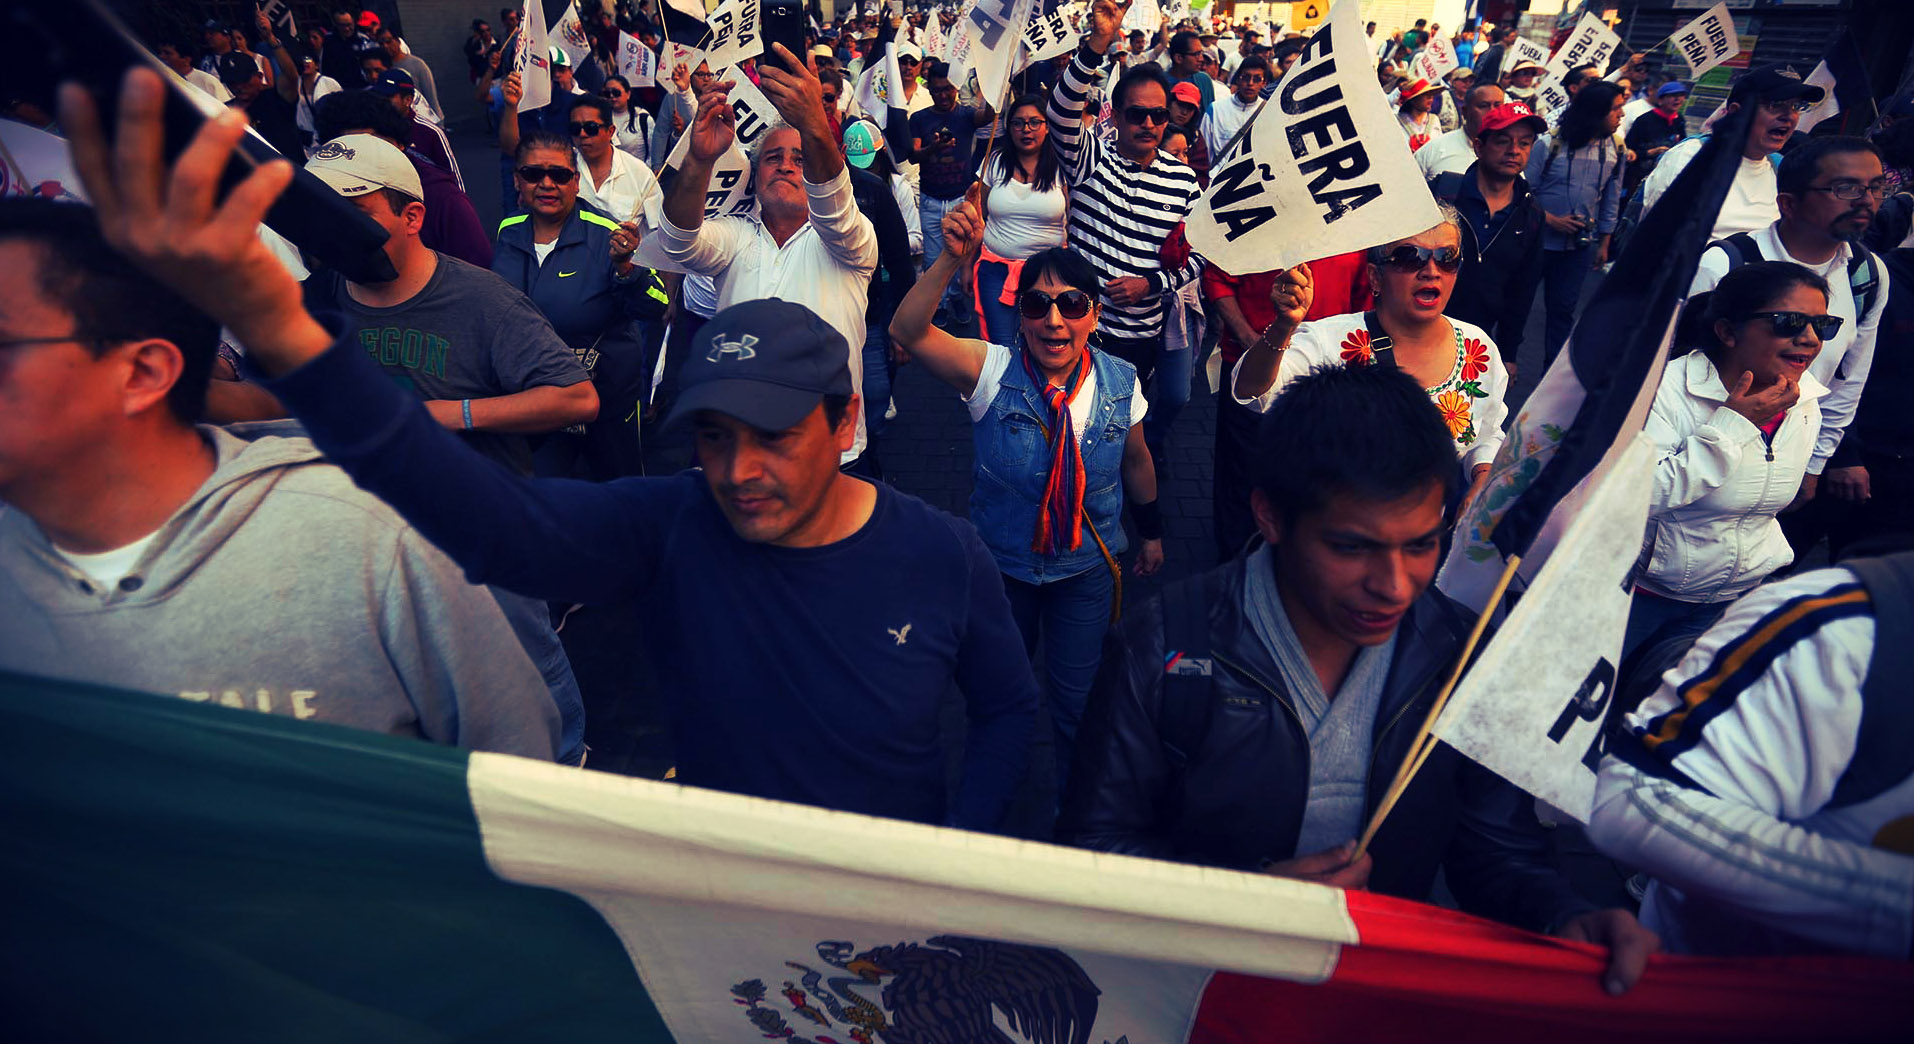 Gasolinazo: Mexico in Revolt